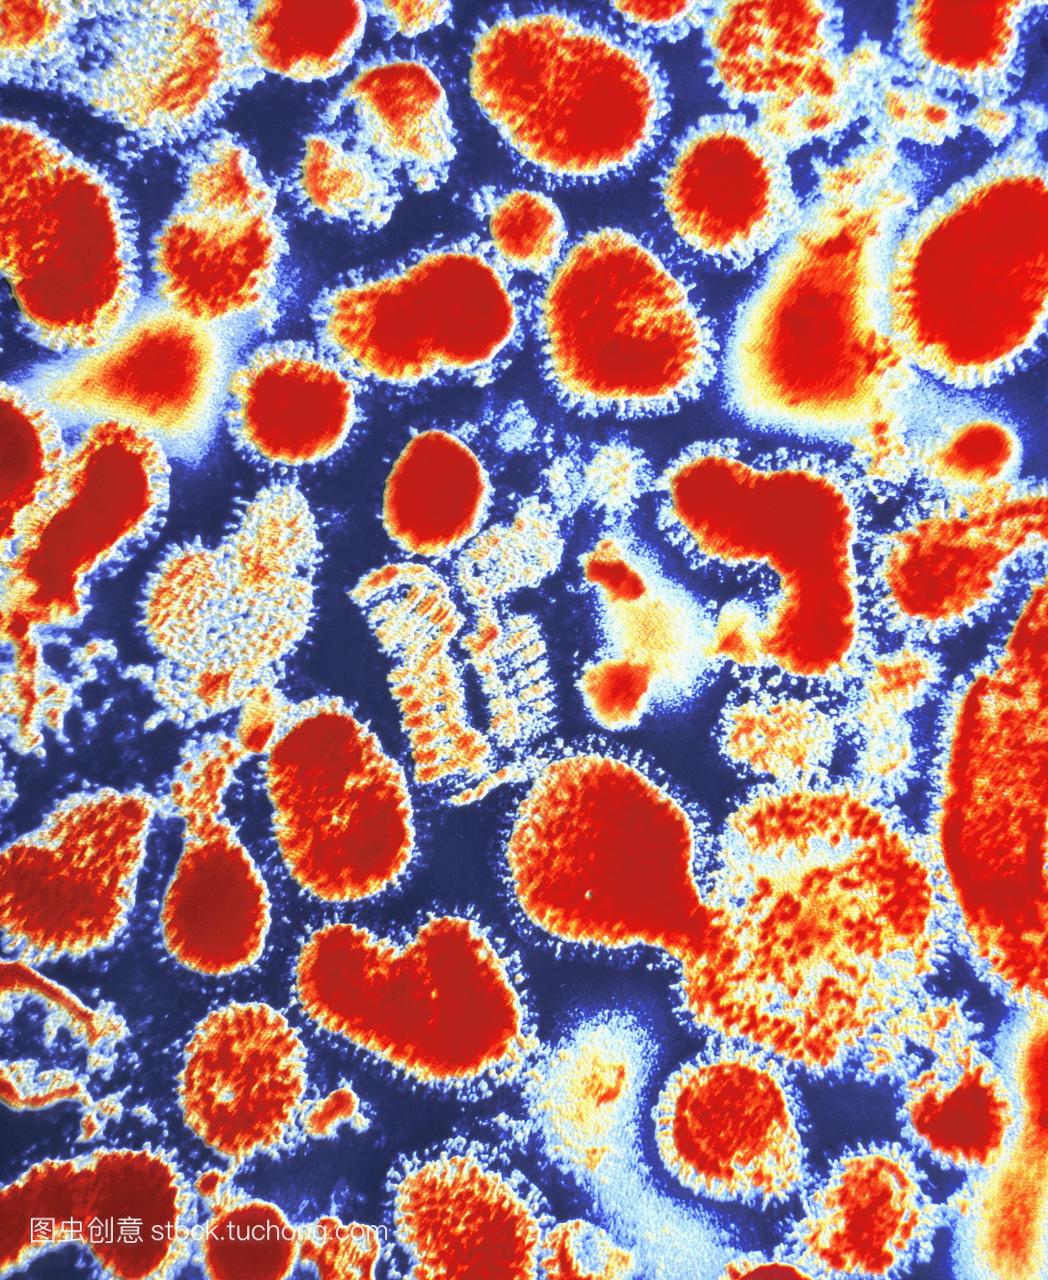 亚洲流感病毒。彩色透射电子显微摄影的亚洲流